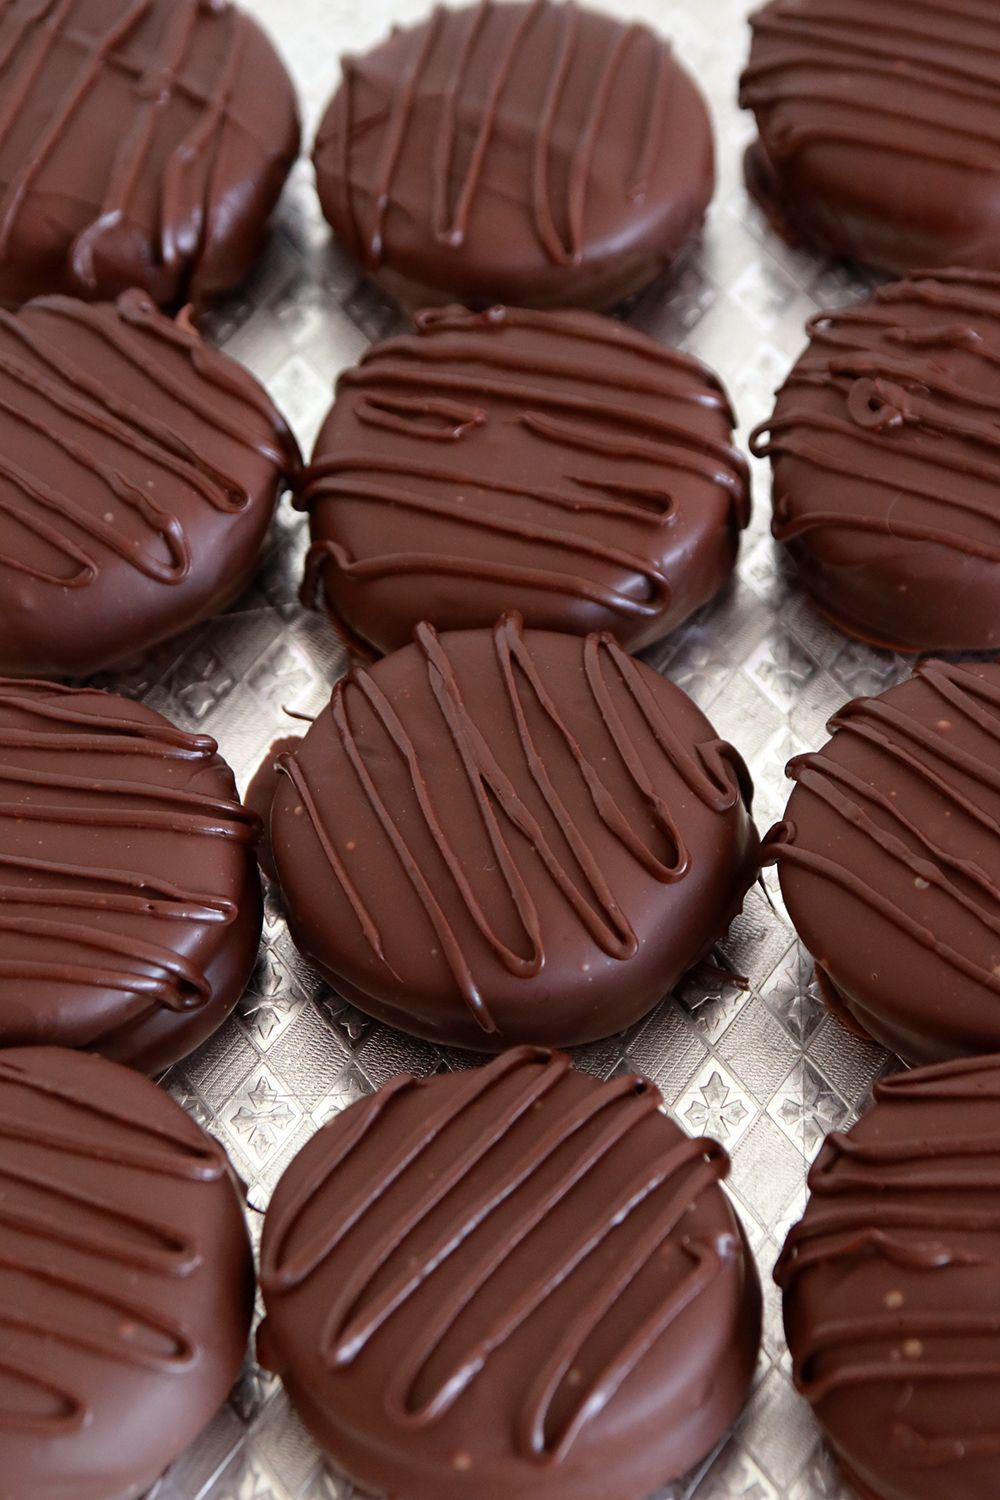 אלפחורס שוקולד בסגנון הוואנה | צילום: נטלי לוין